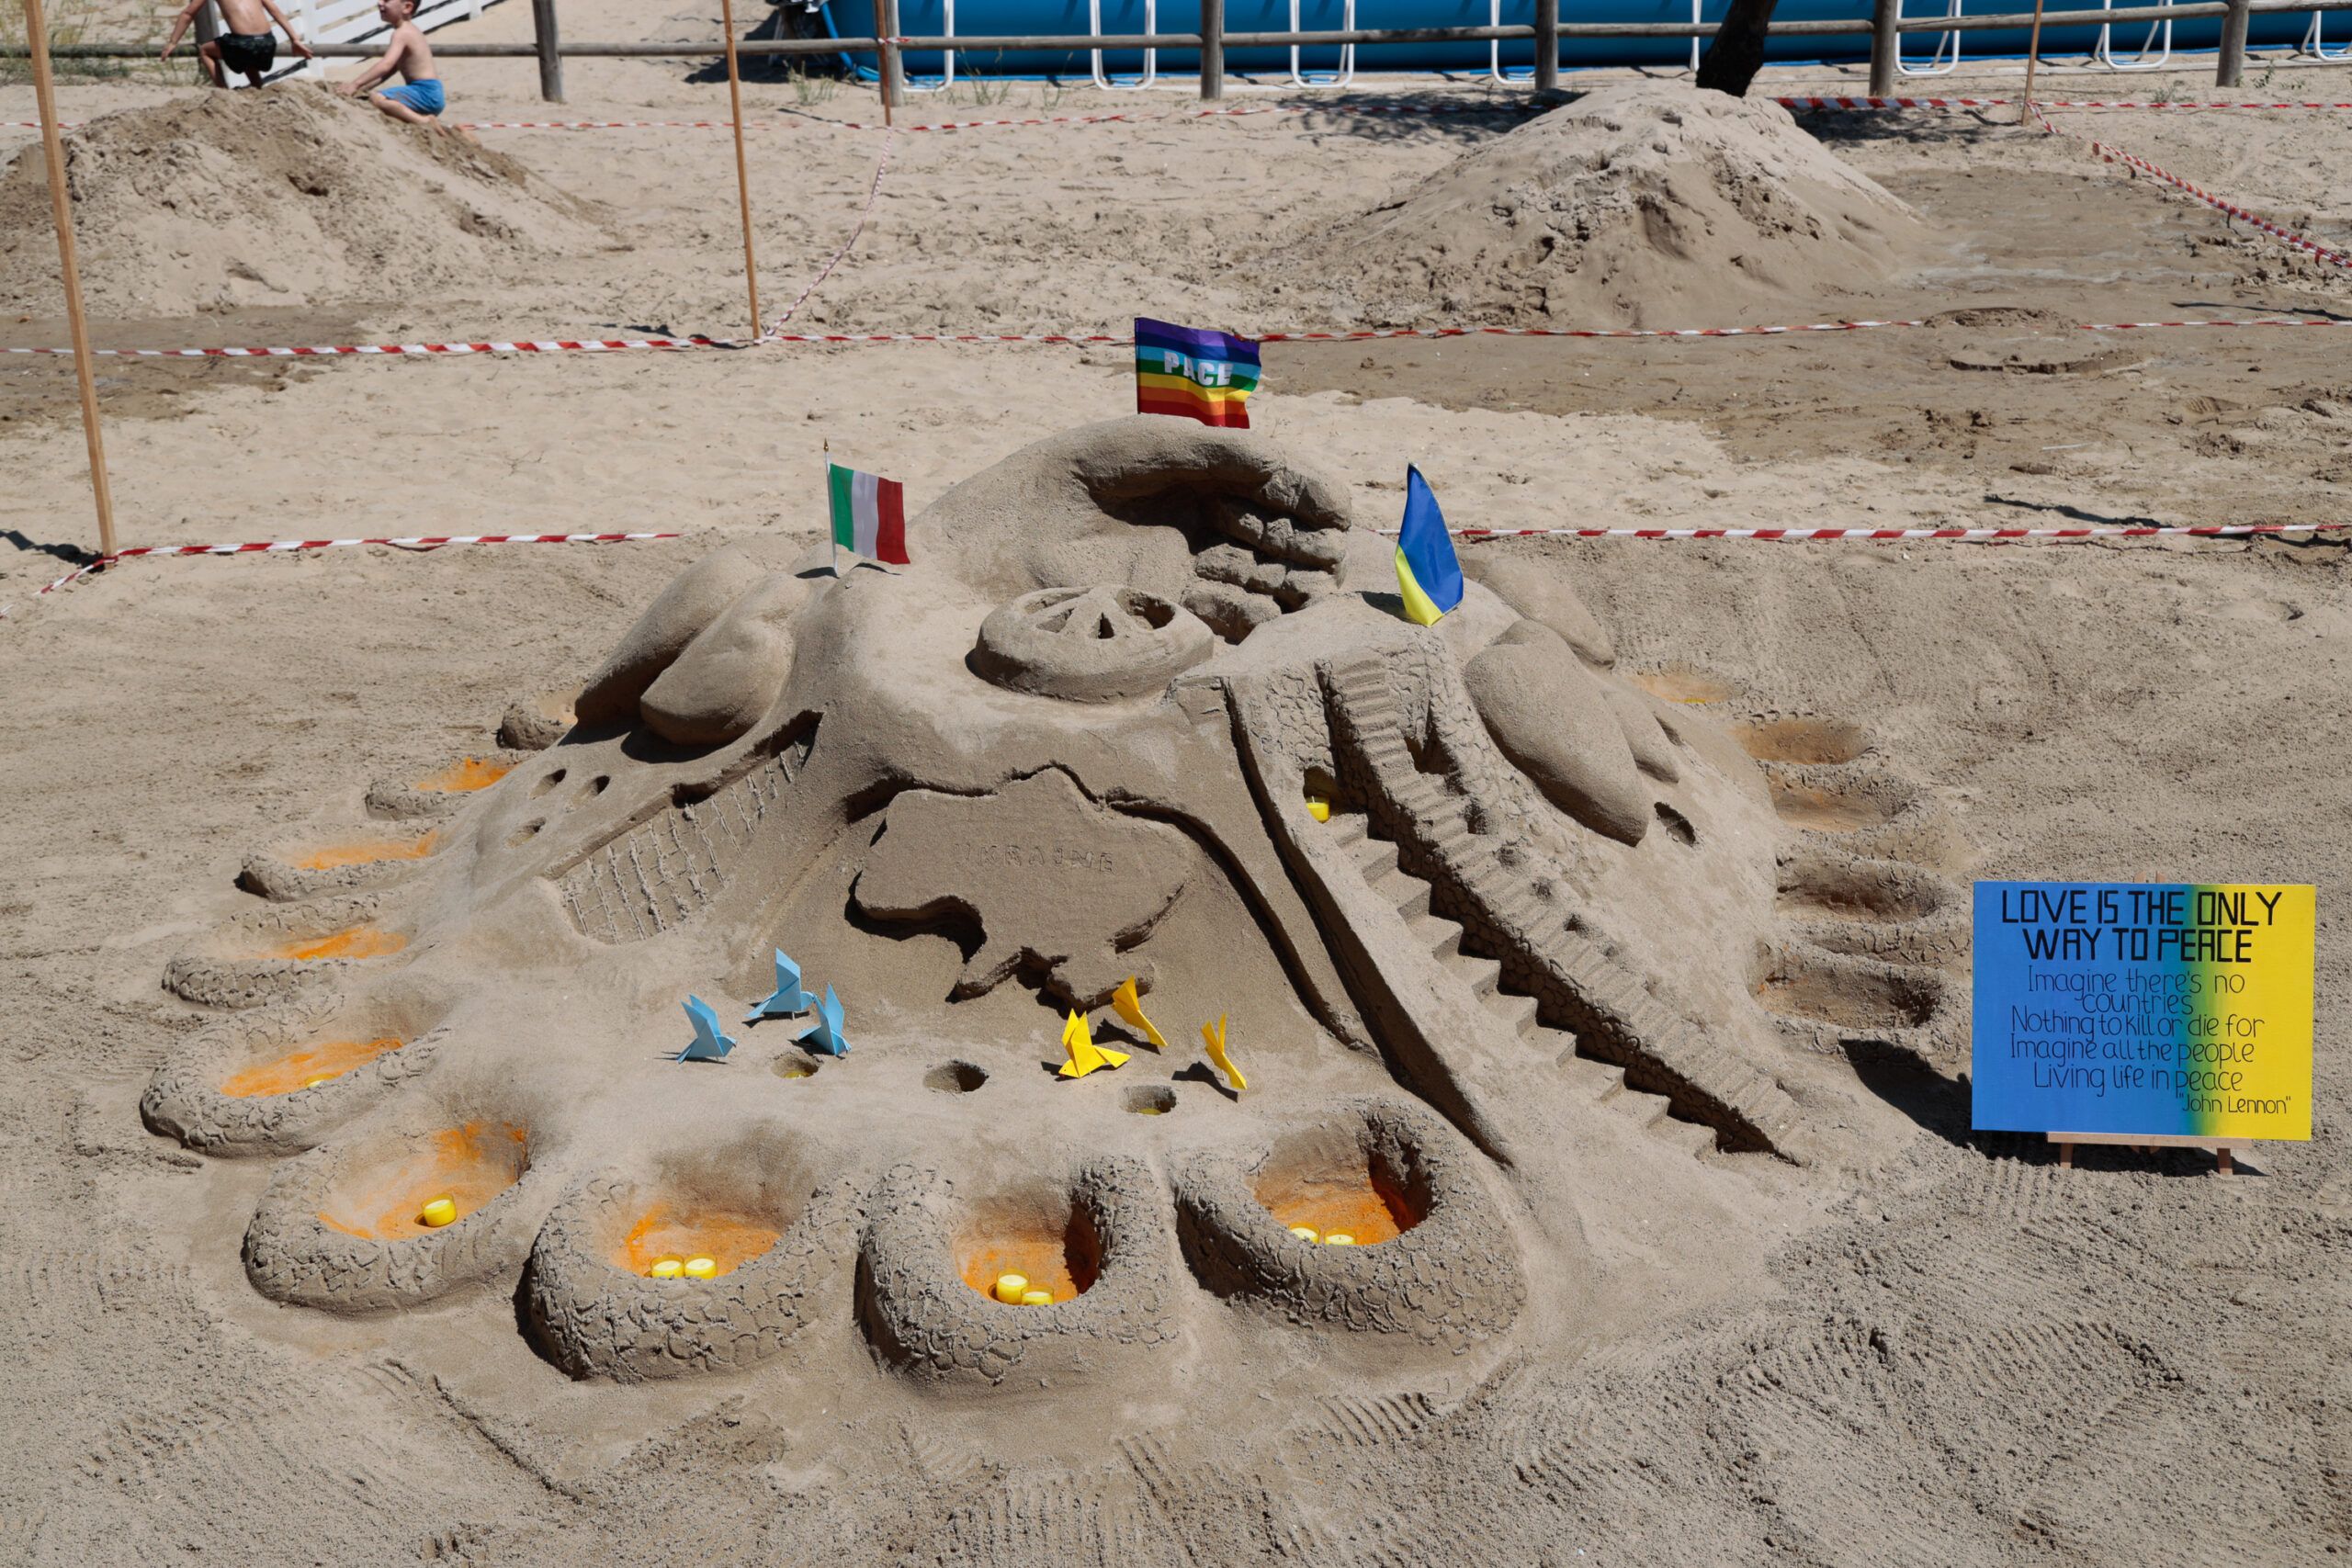 Gara dei castelli di sabbia: arte e divertimento sulla spiaggia di Tortoreto FOTO